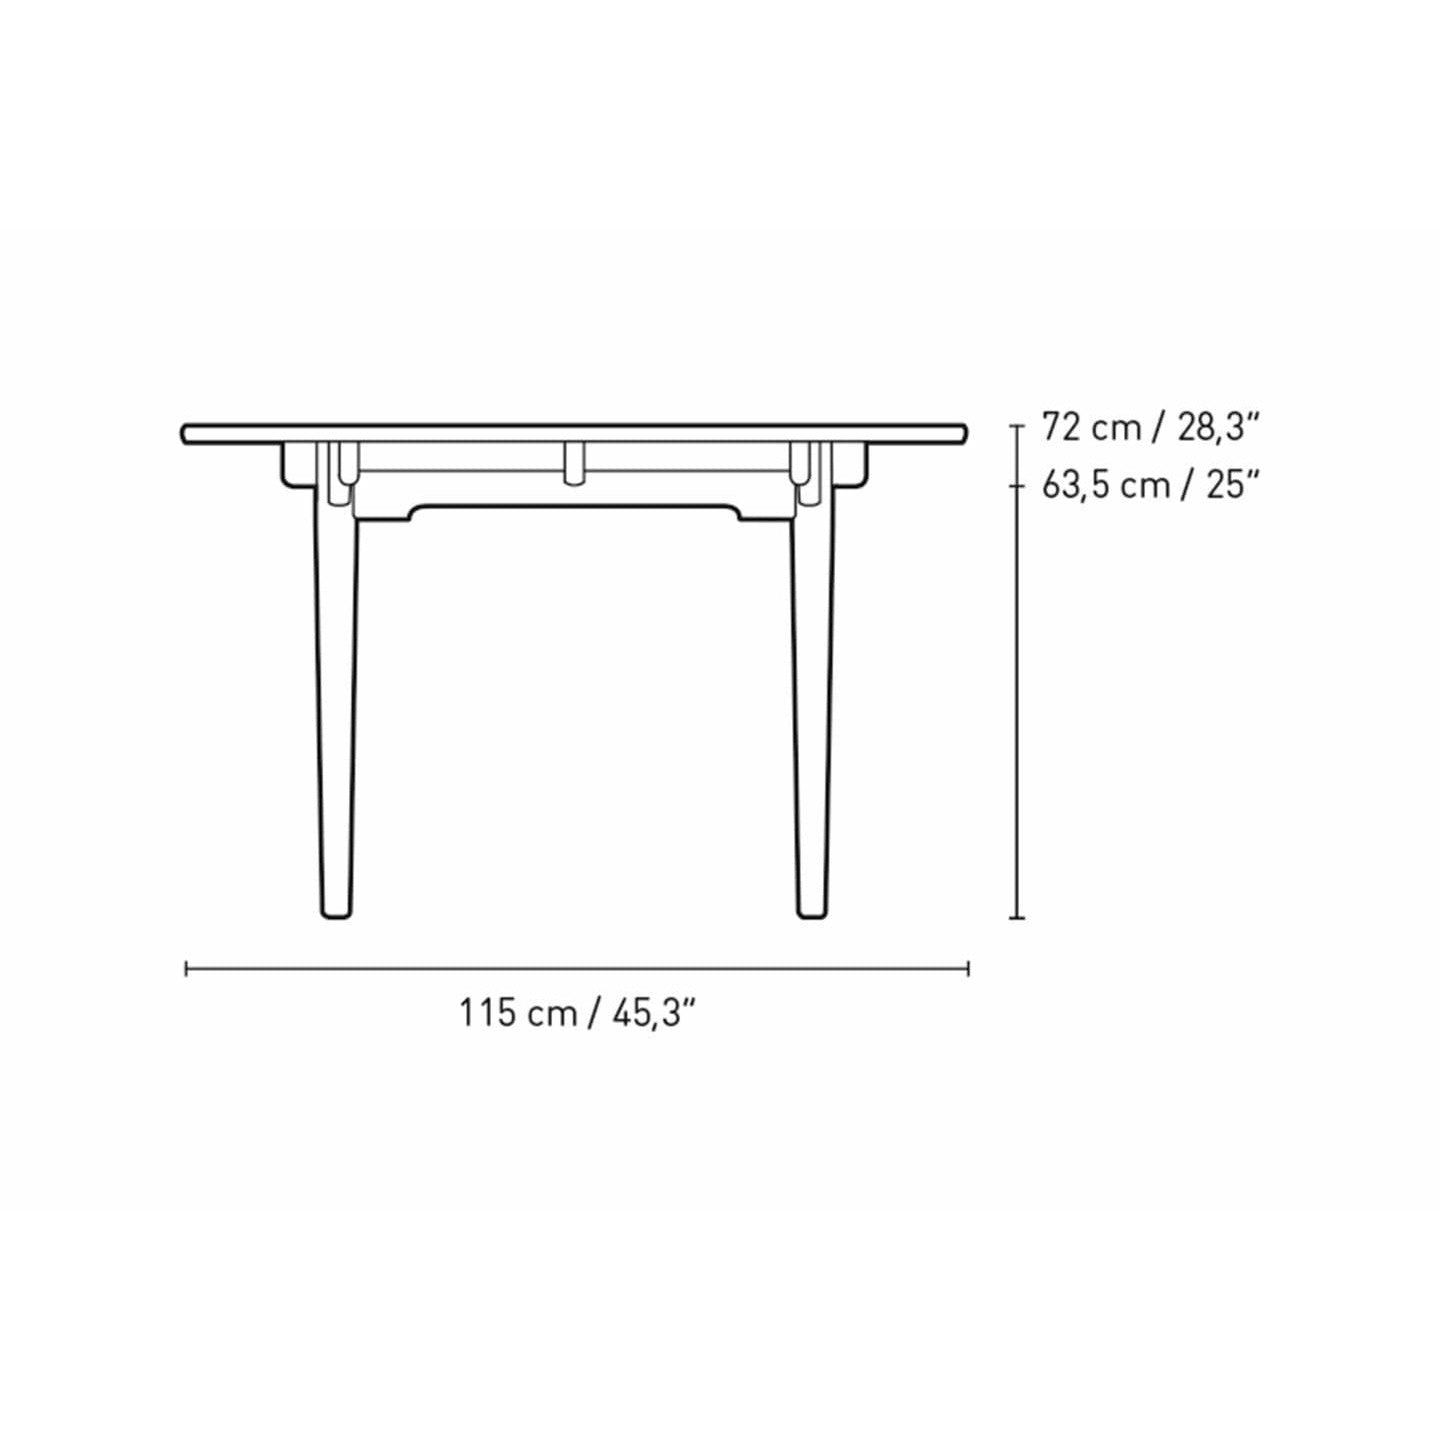 Carl Hansen CH339 matbord designat för 4 utdragbara plattor, valnötoljad